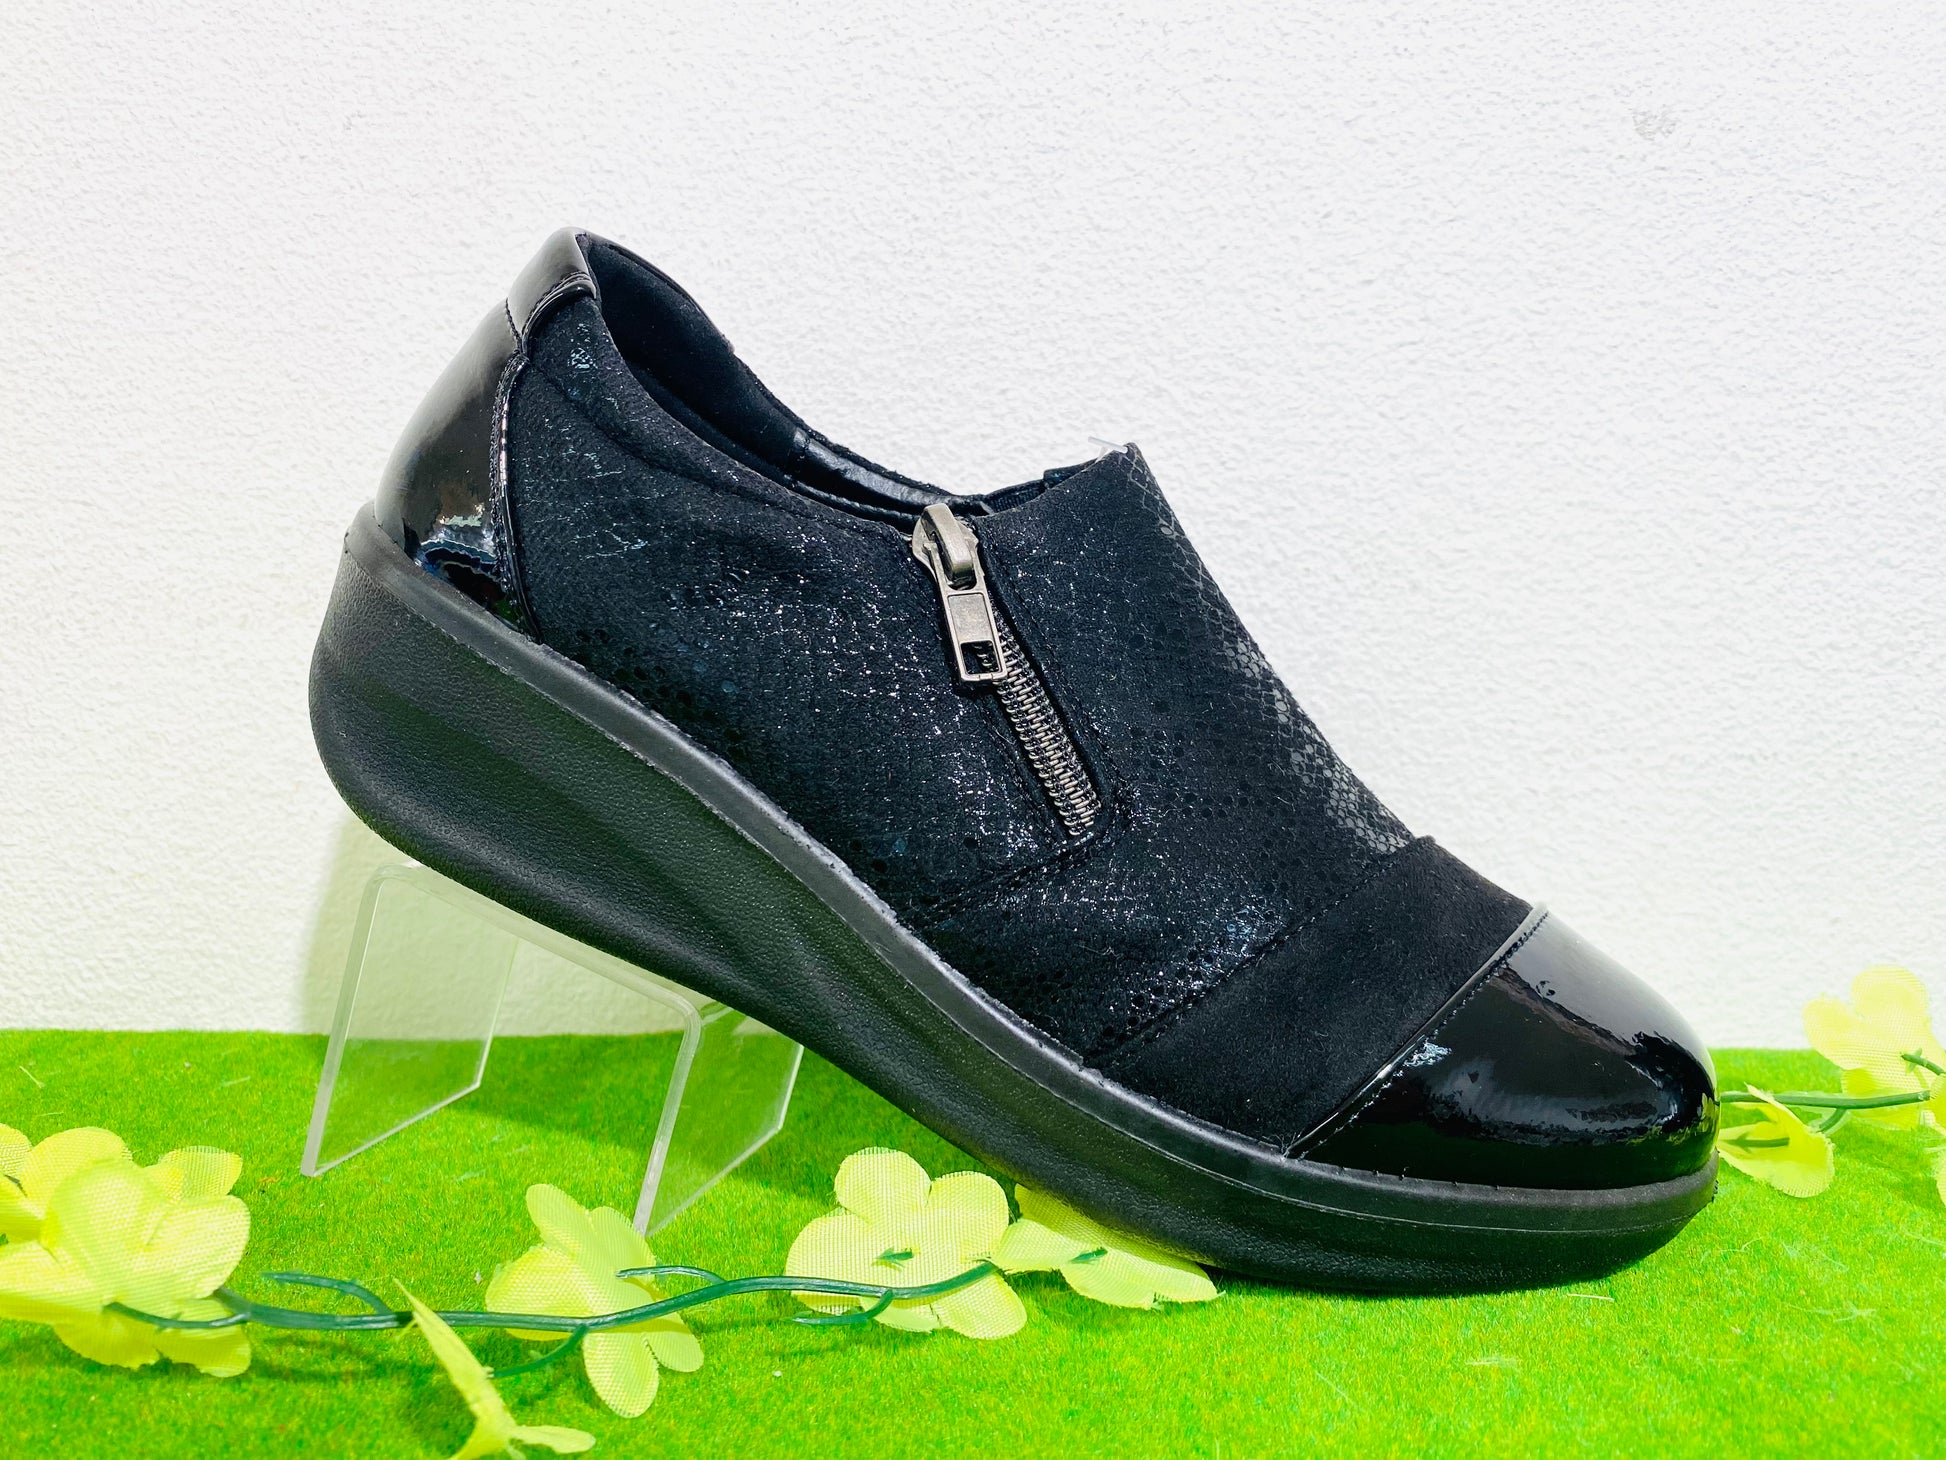 Propet W1524 - Zip shoe black - Kirbys Footwear Ltd